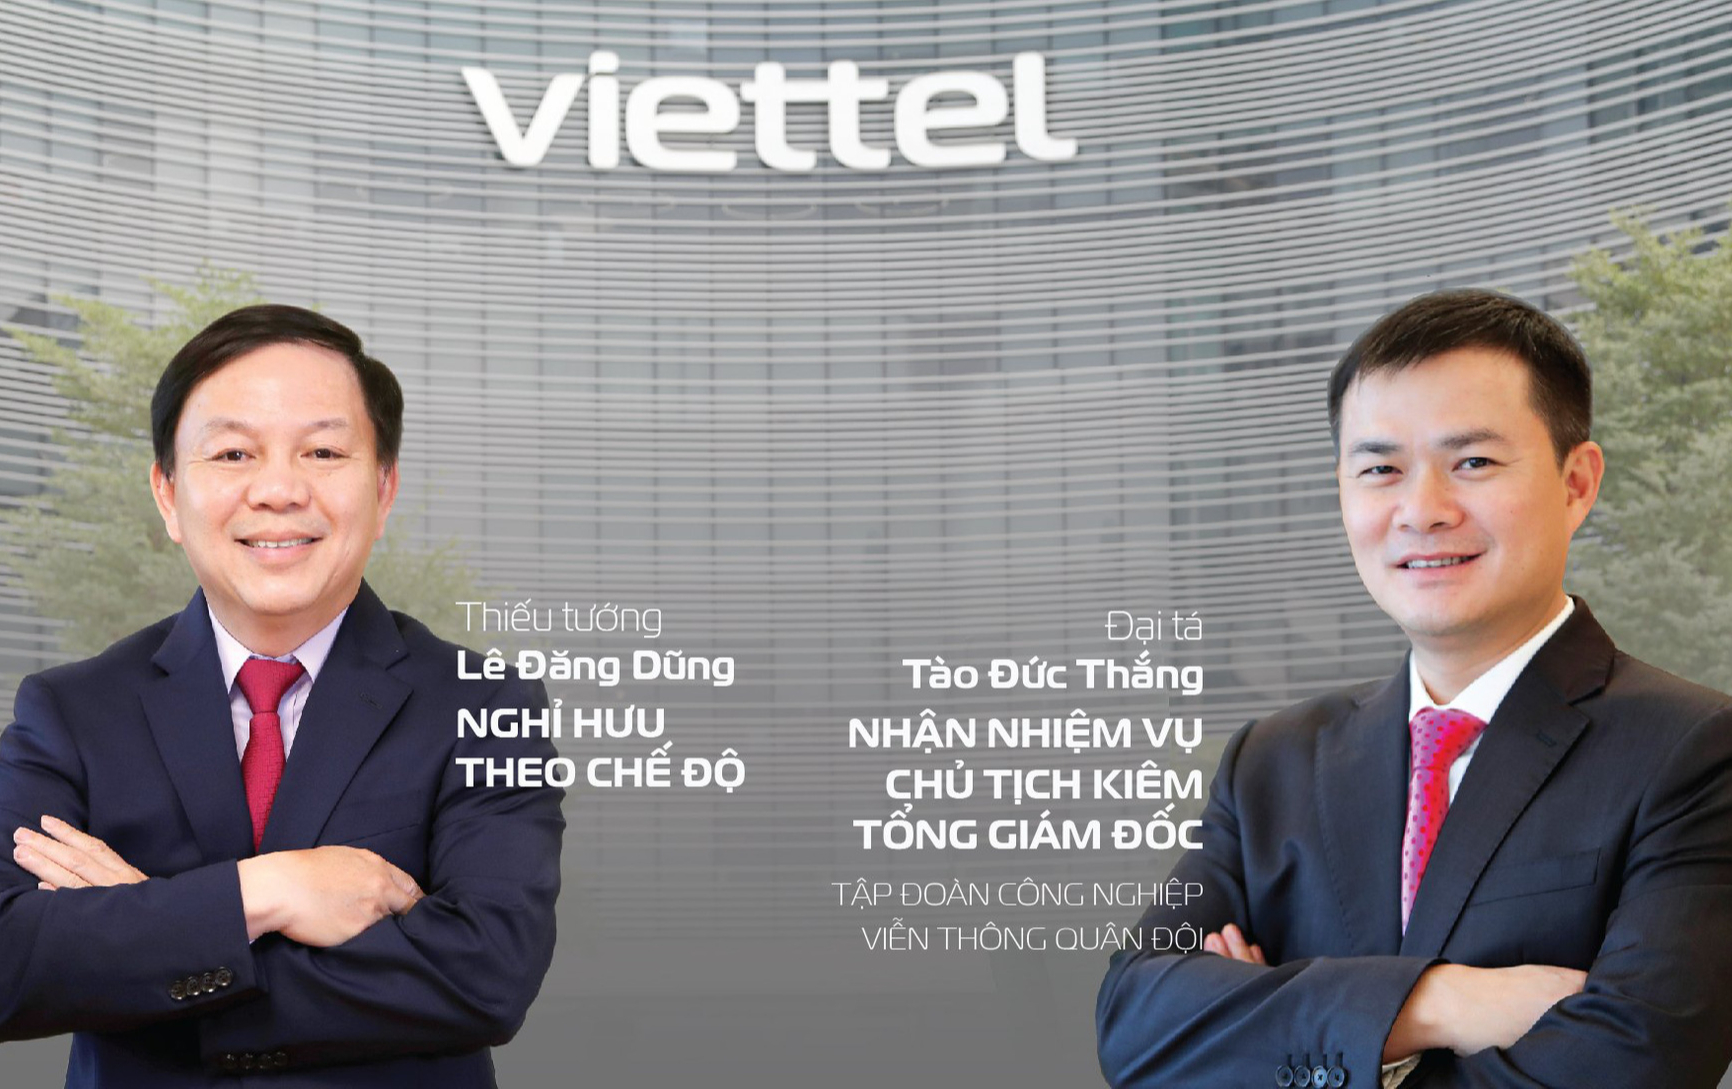 Viettel 5 năm liền là công ty đứng đầu ngành công nghệ thông tin  viễn  thông Việt Nam